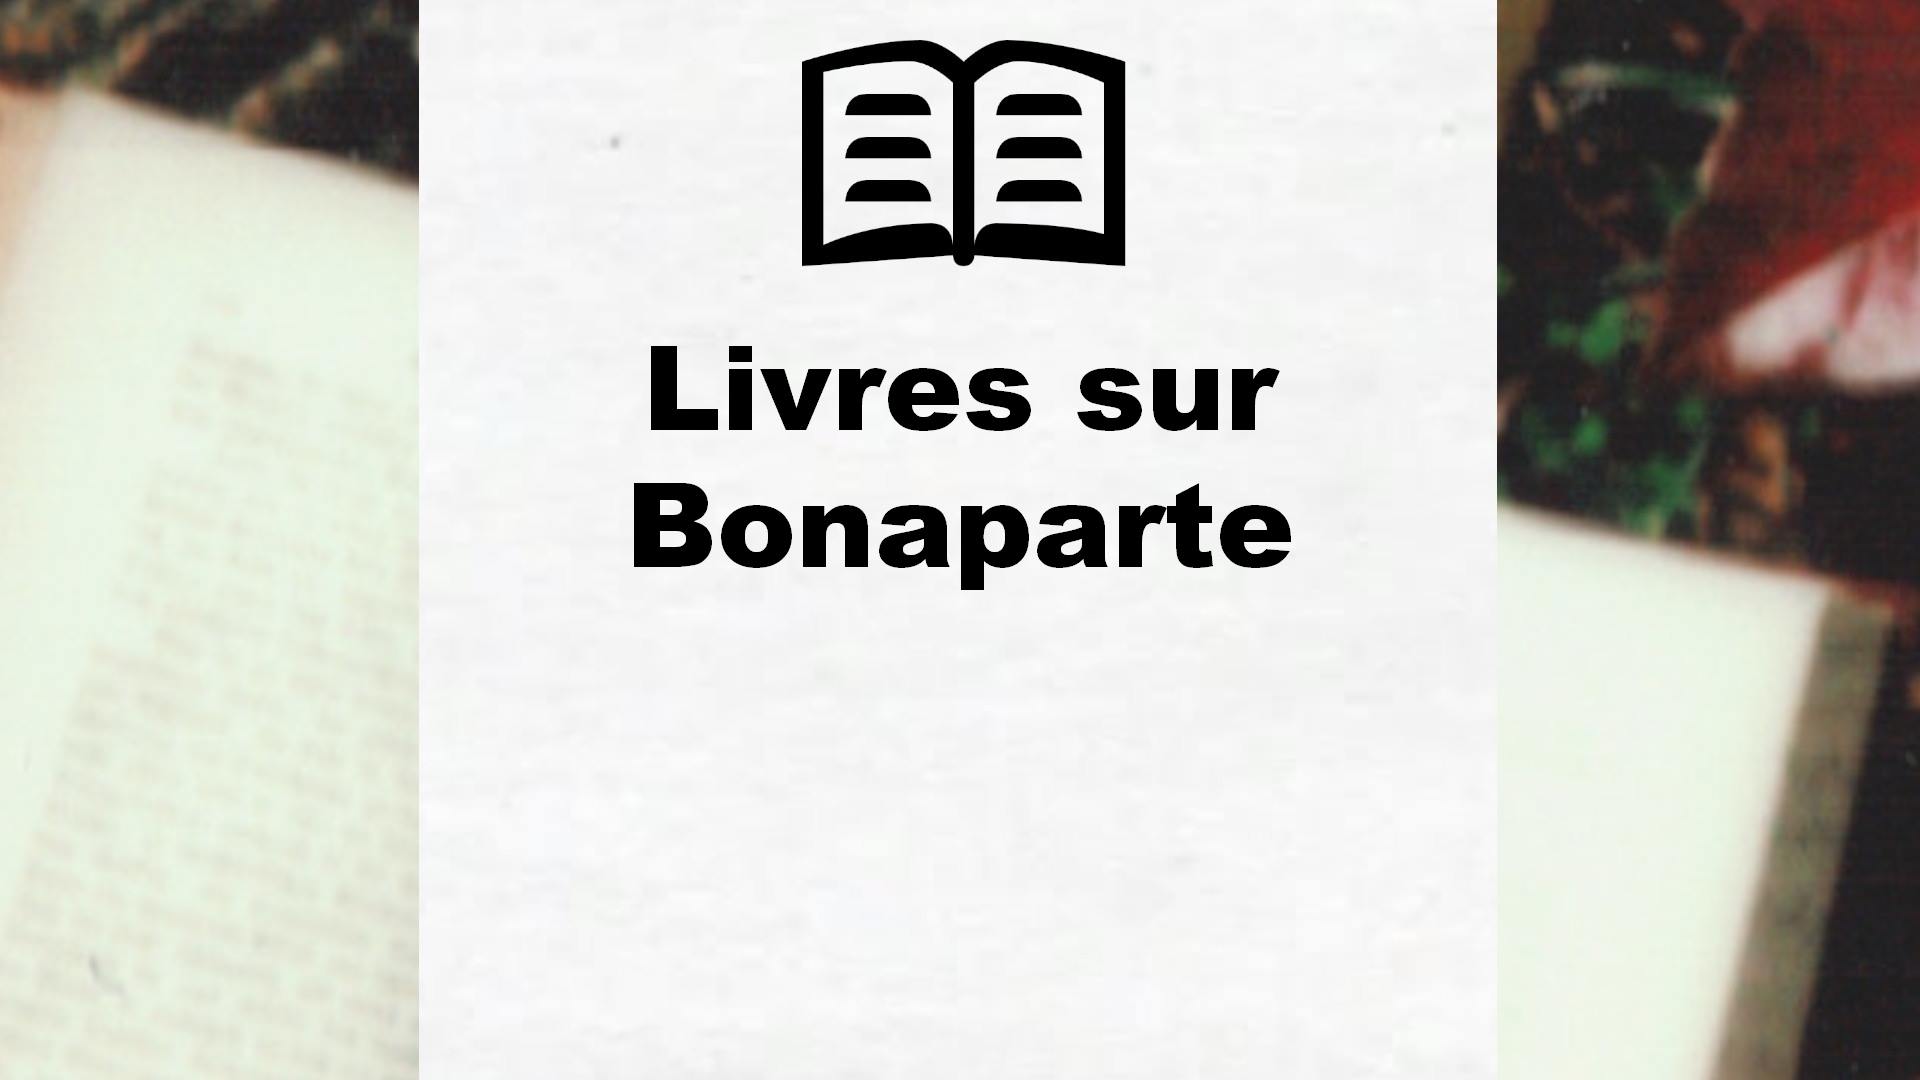 Livres sur Bonaparte